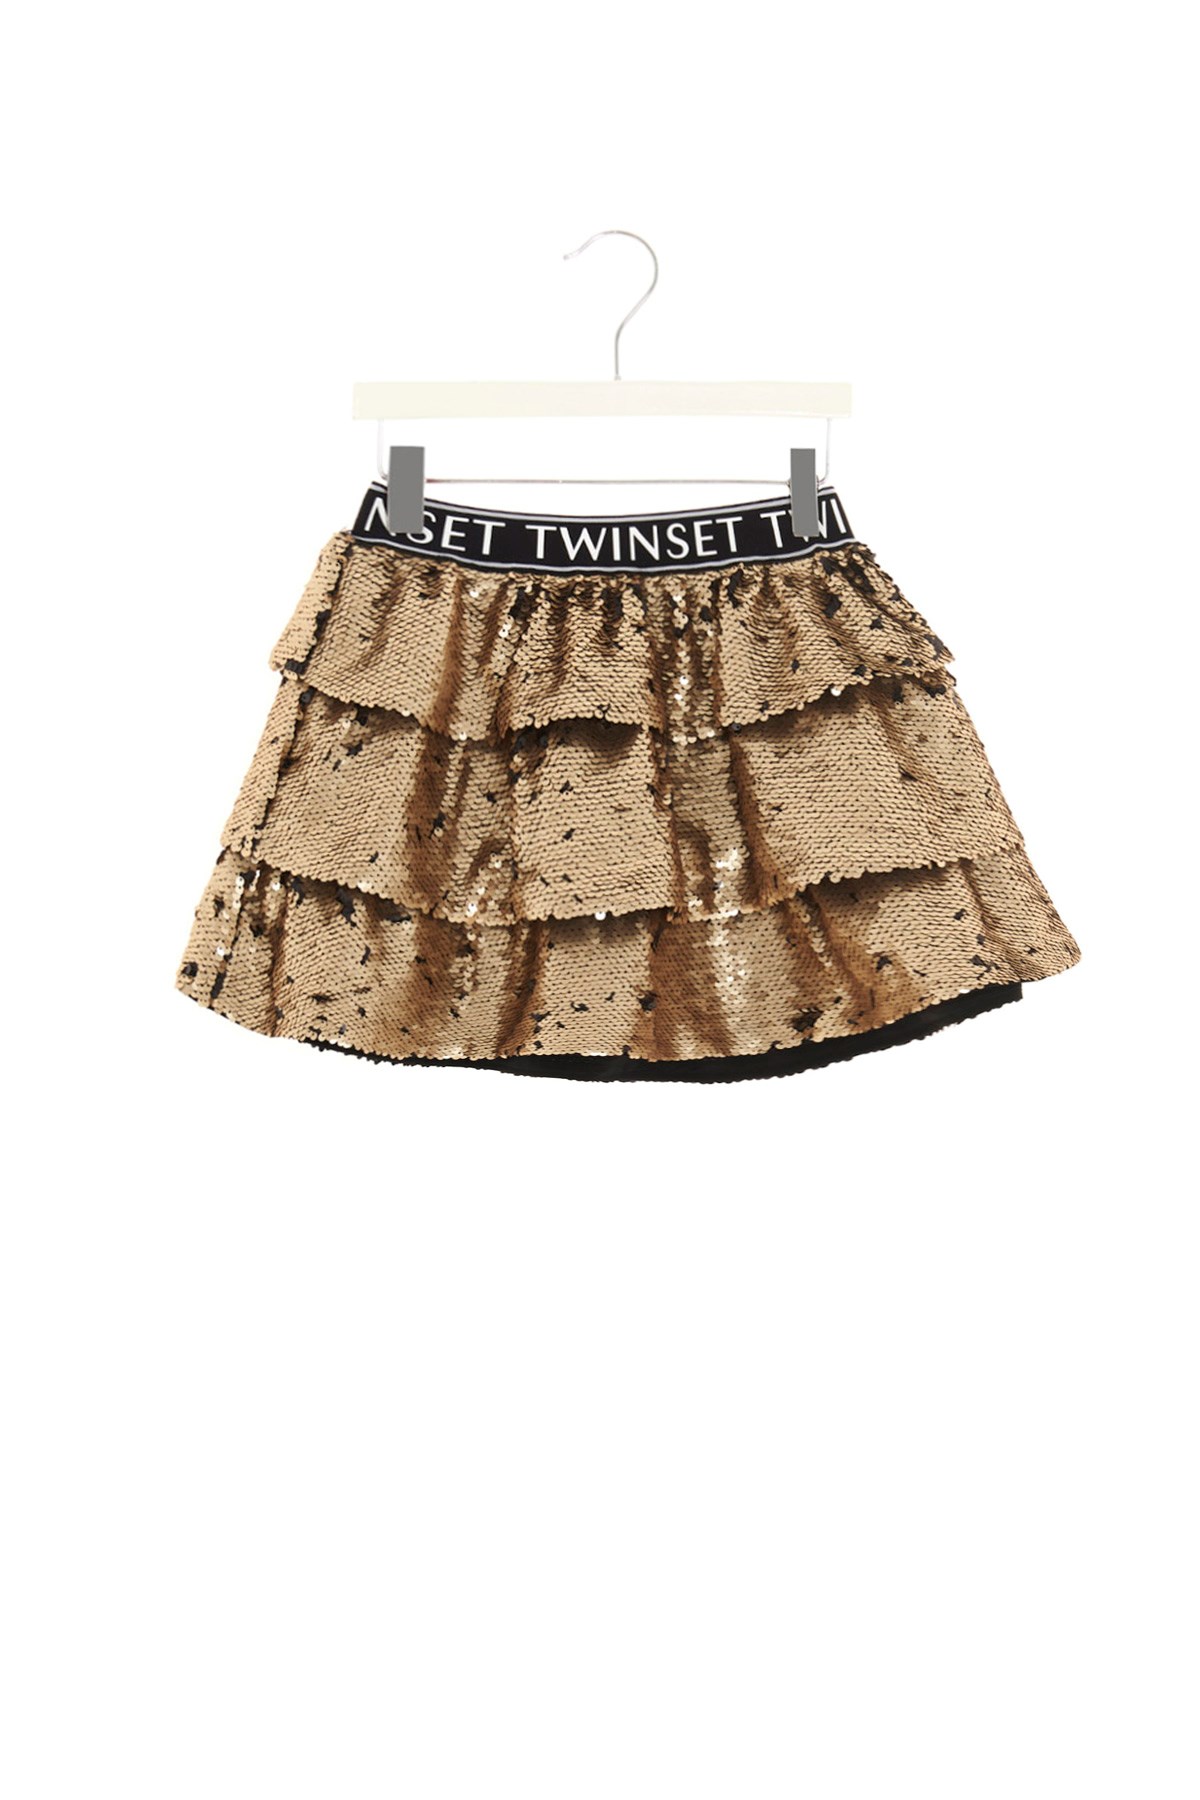 TWIN SET Sequin Skirt